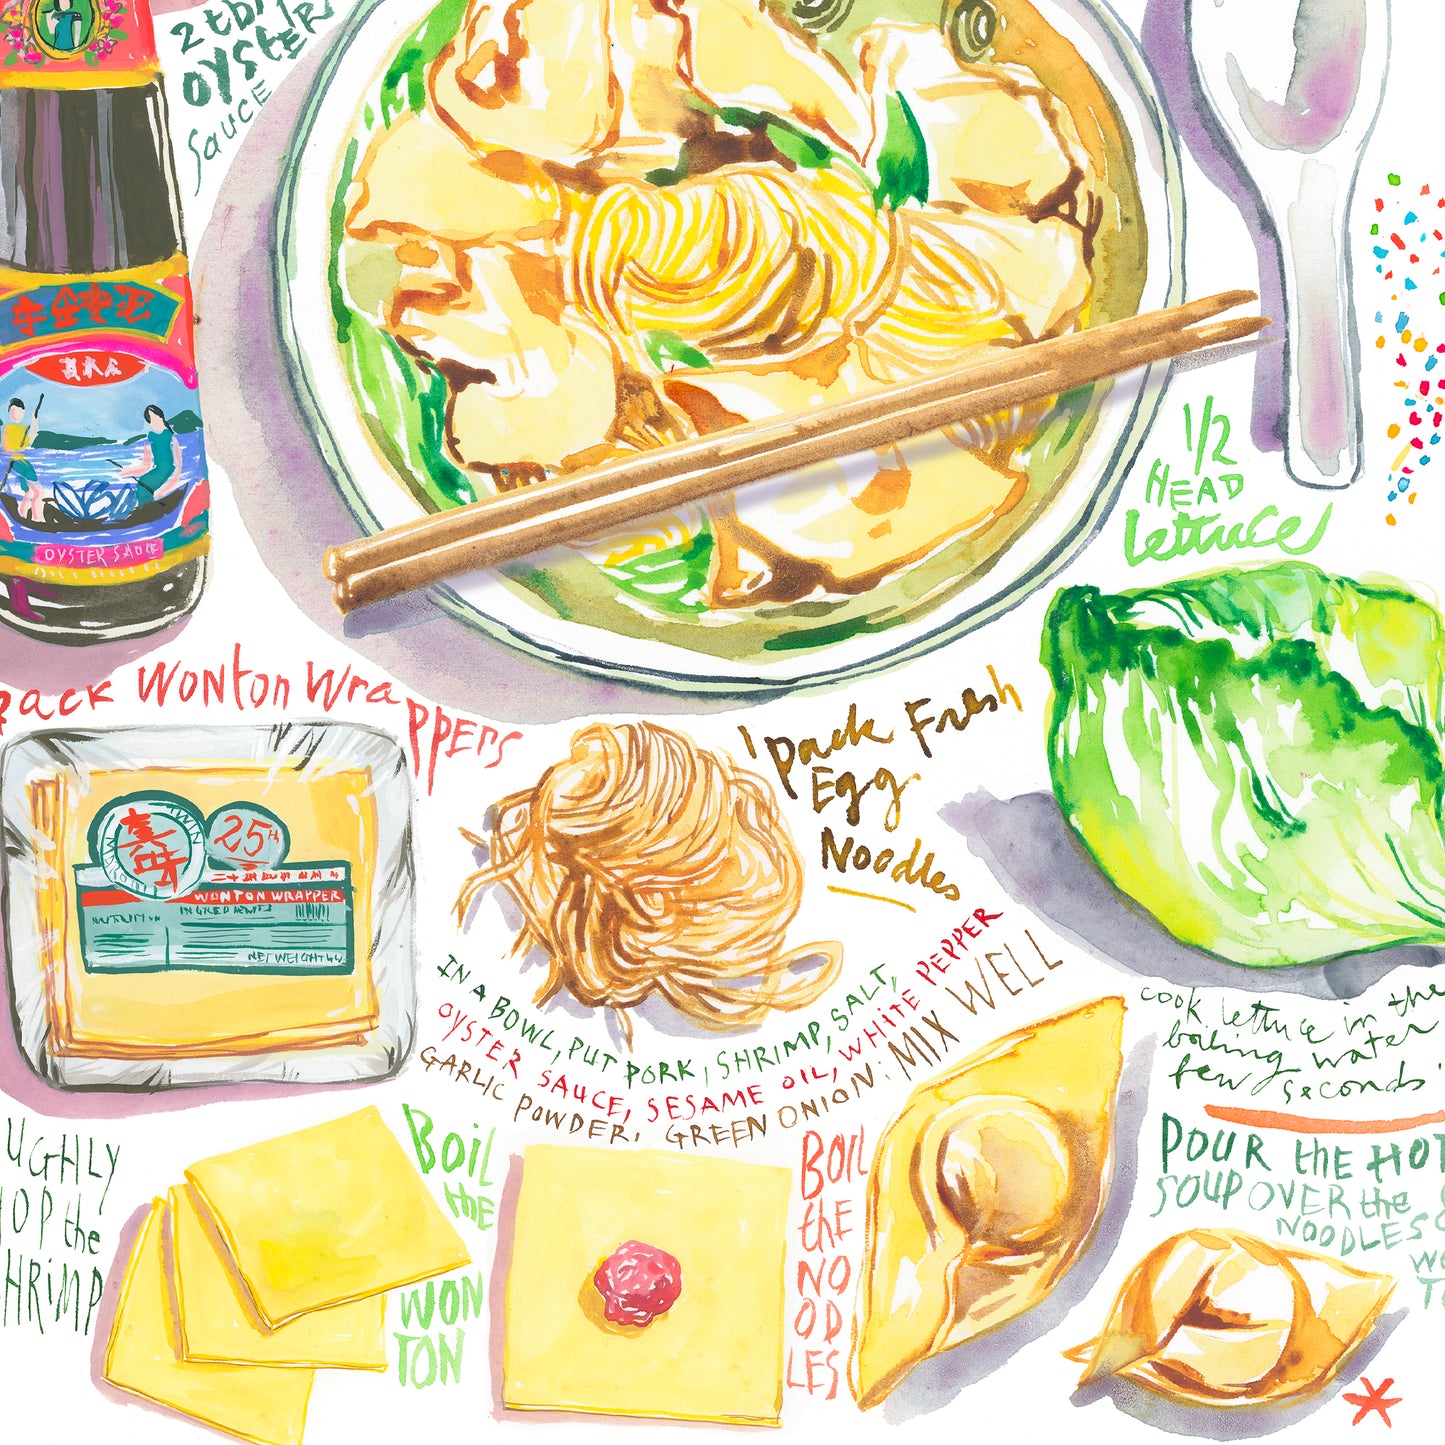 Hong Kong Wonton Noodle Soup recipe